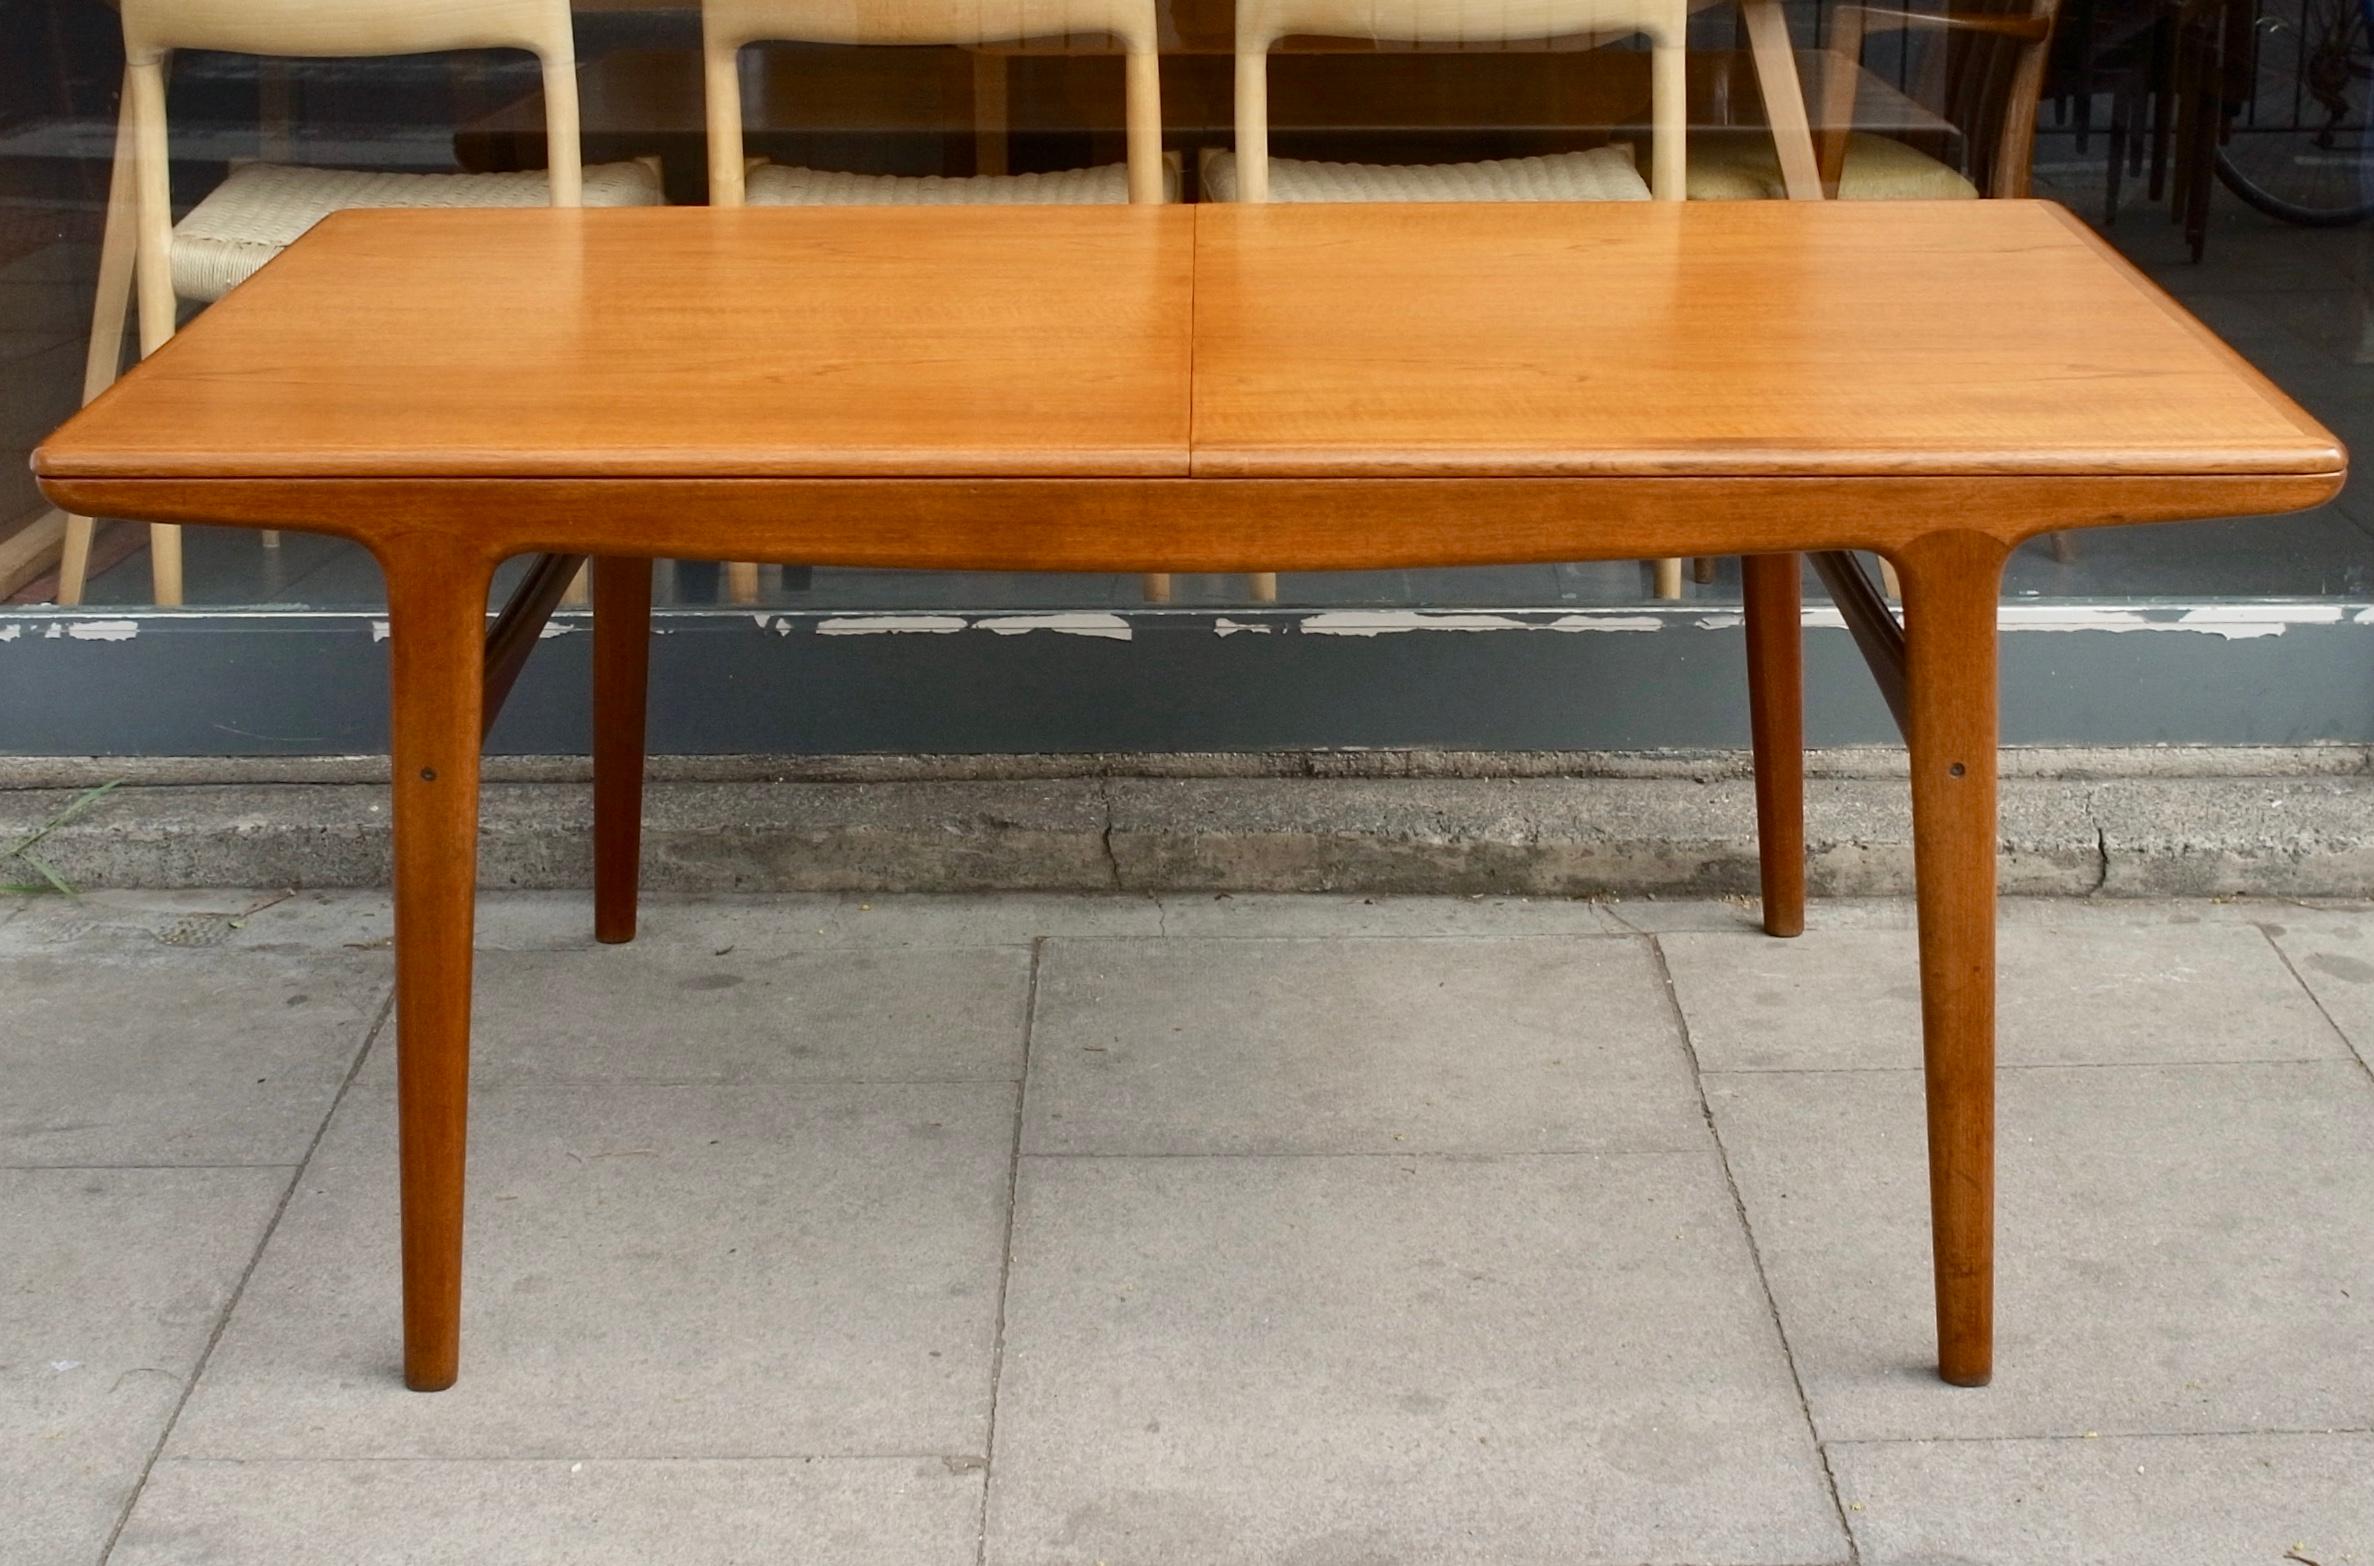 Table de salle à manger rectangulaire à rallonge en teck sculptural des années 1960, reposant sur quatre pieds fuselés, conçue par Arne Hovmand-Olsen et produite par Mogens Kold. Cette table peut accueillir 6x personnes sans extension et jusqu'à 10x